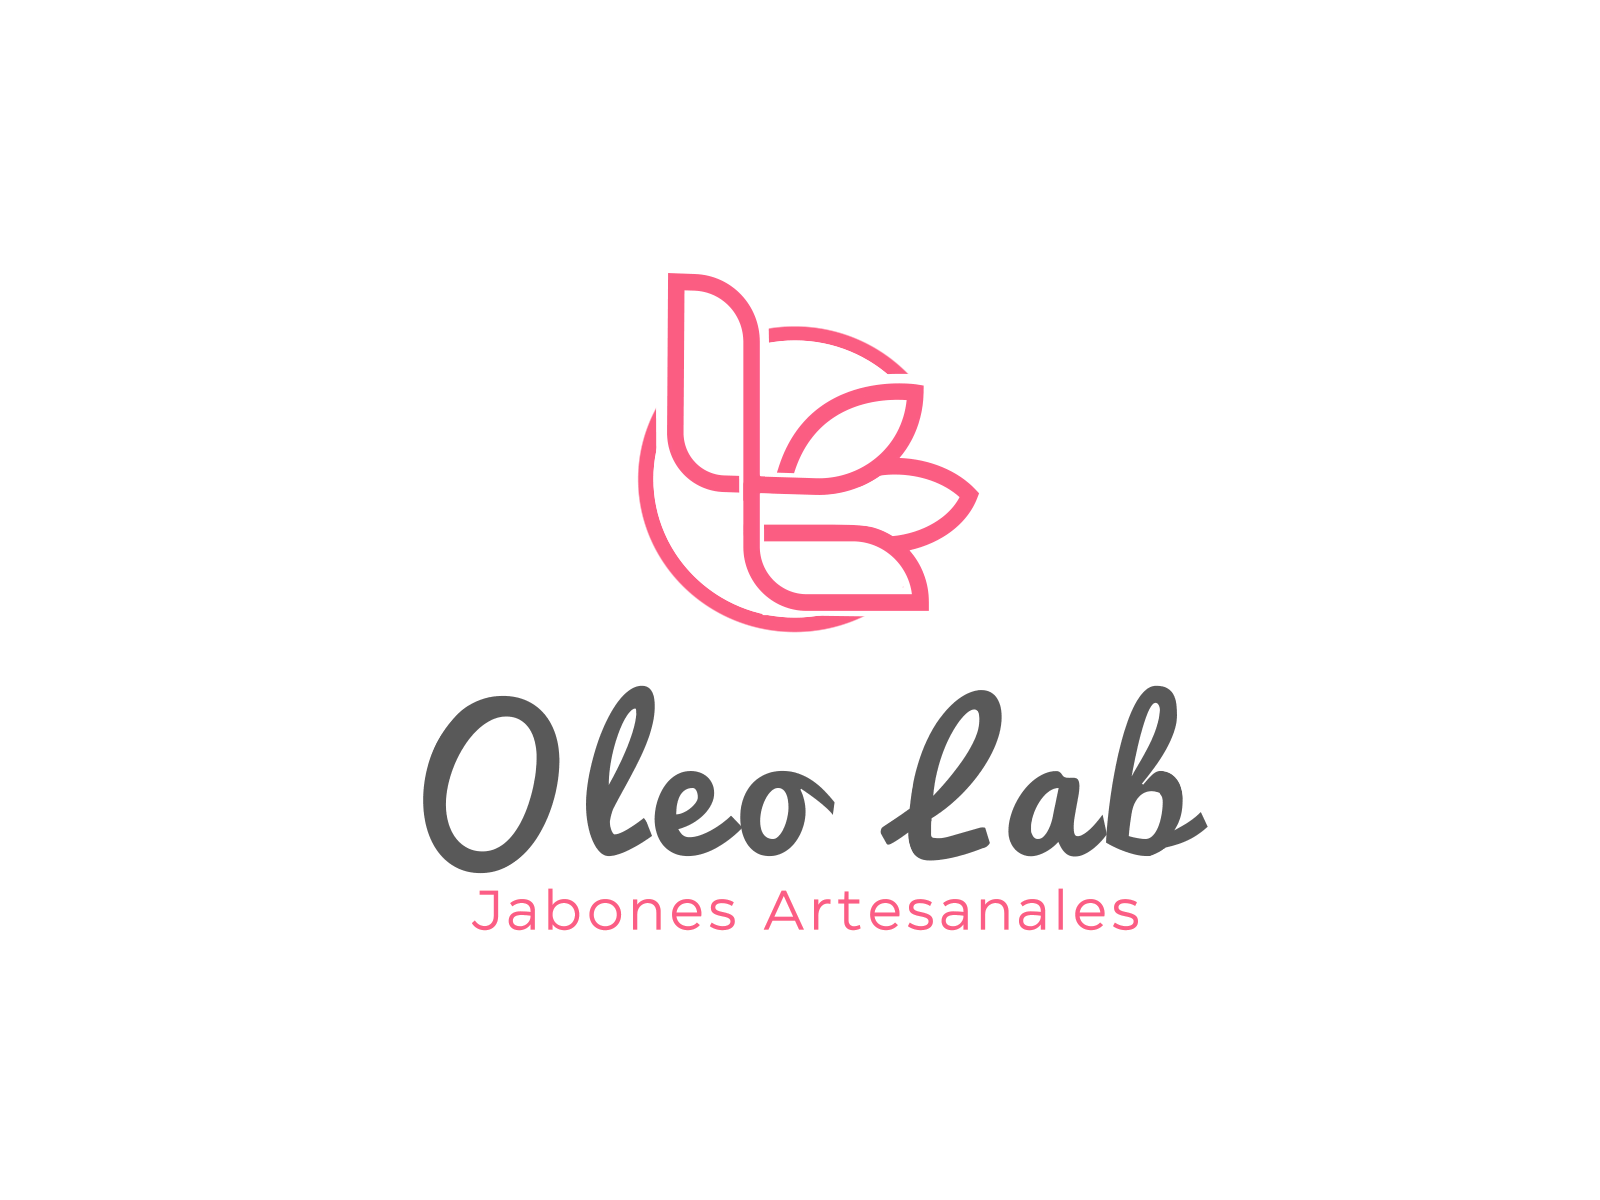 Oleo lab Logo animation